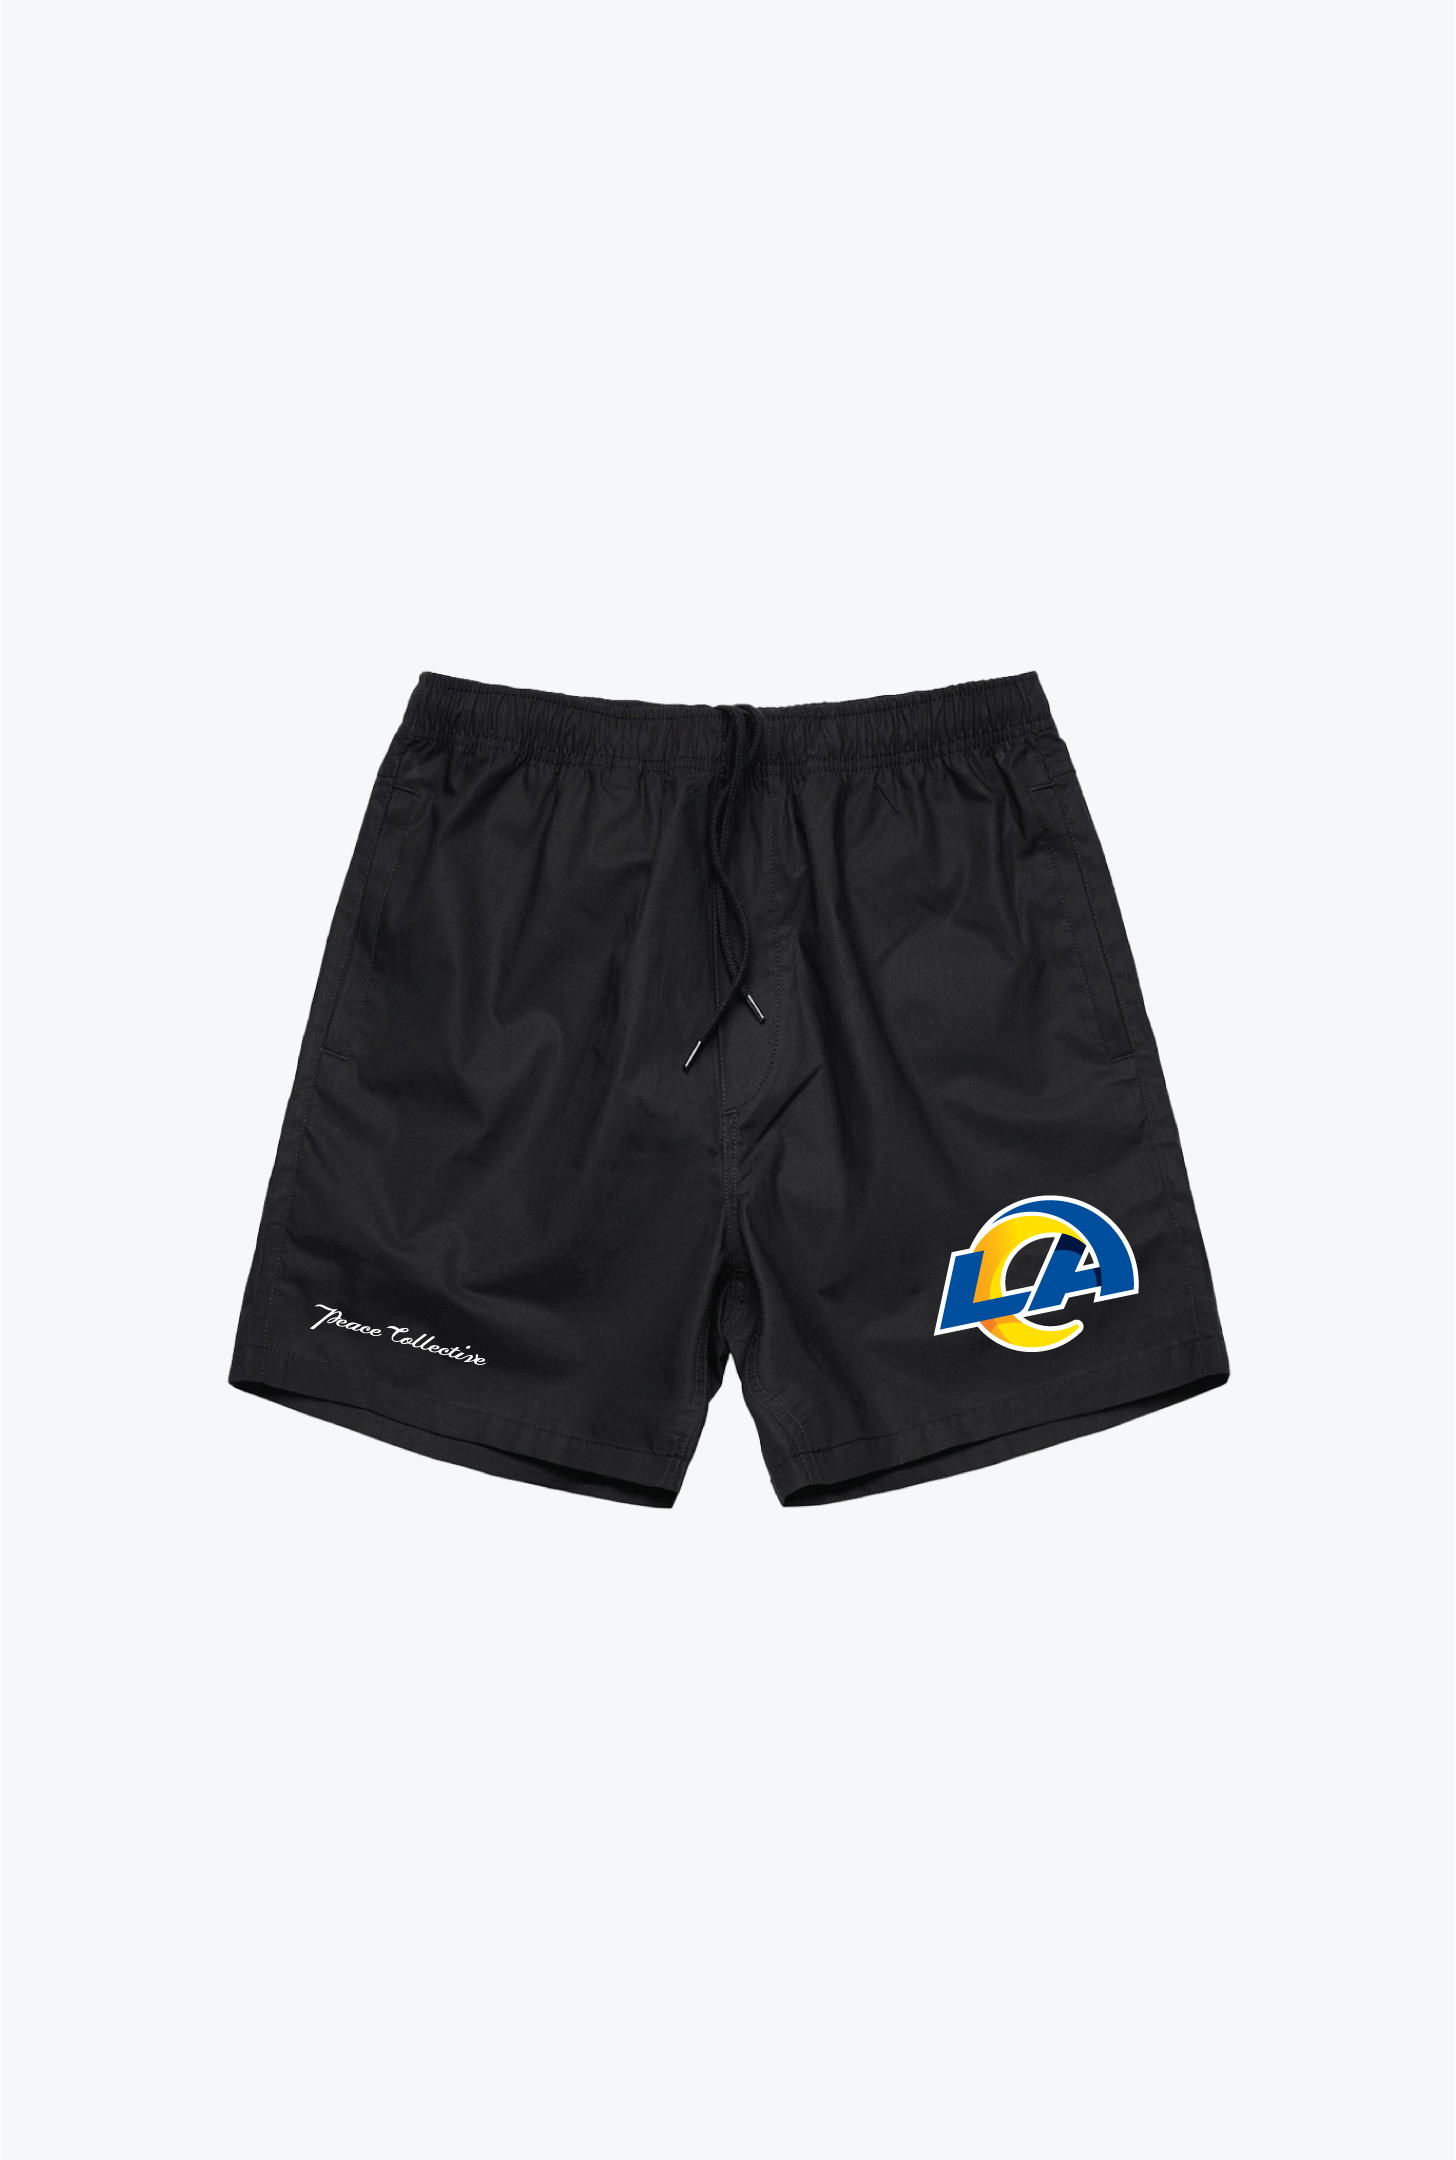 Los Angeles Rams Board Shorts - Black